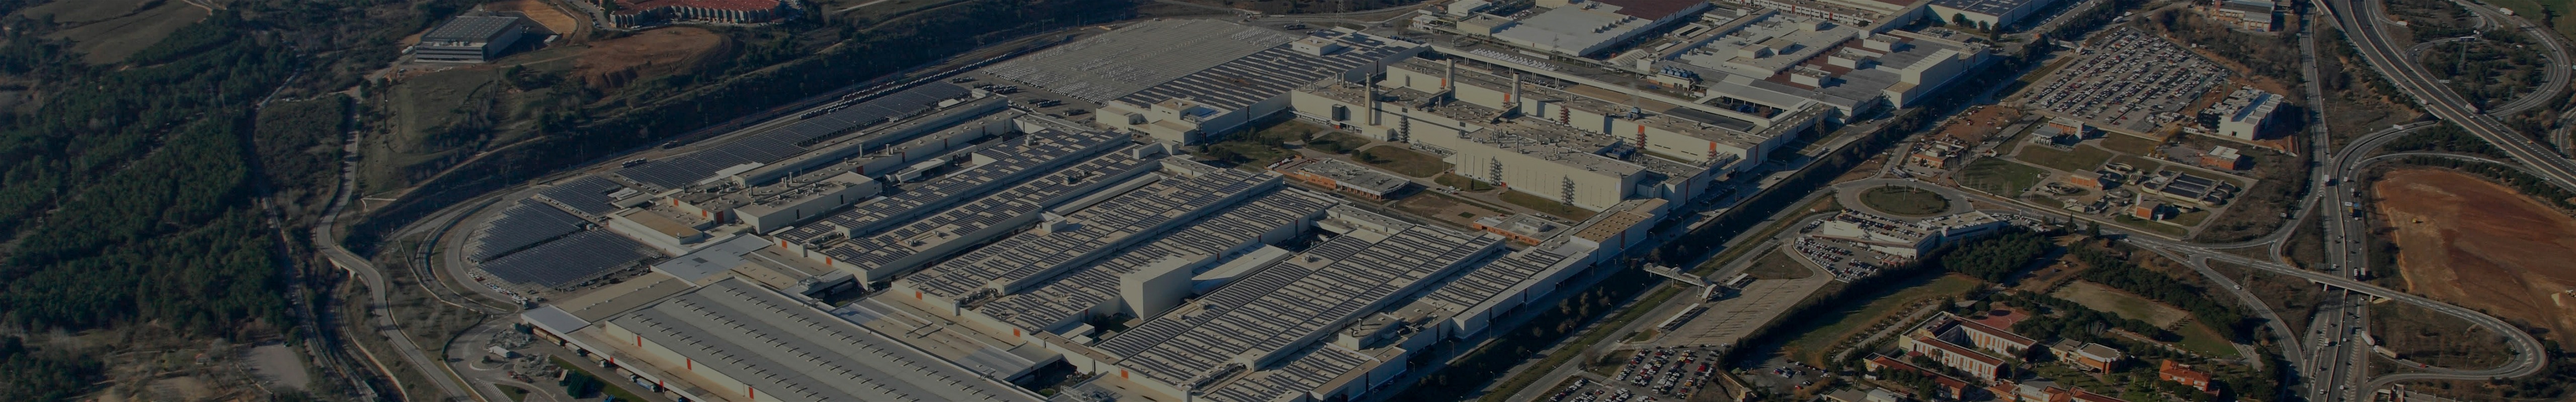 Luftbild der Produktionsstätte